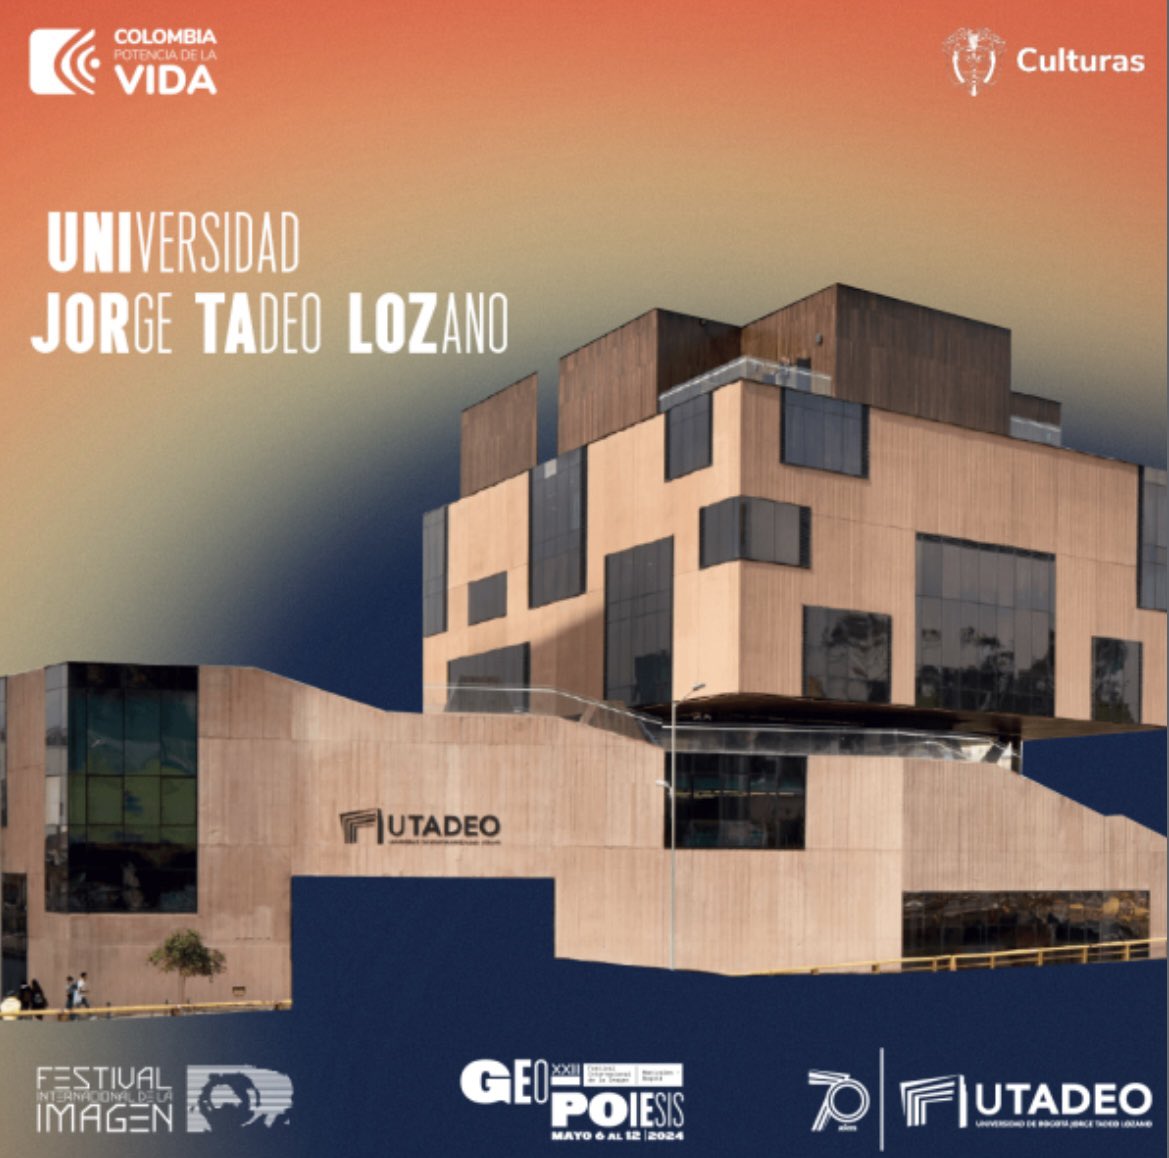 La @Utadeo_edu_co es uno de los espacios en Bogotá donde se vivirá el Festival Internacional de la Imagen del 6 al 12 de mayo. Conoce más detalles en: festivaldelaimagen.com @mincultura @udecaldas #ImagenFest2024 #GEOpoiesis #Arte #Diseño #Ciencia #Tecnologia